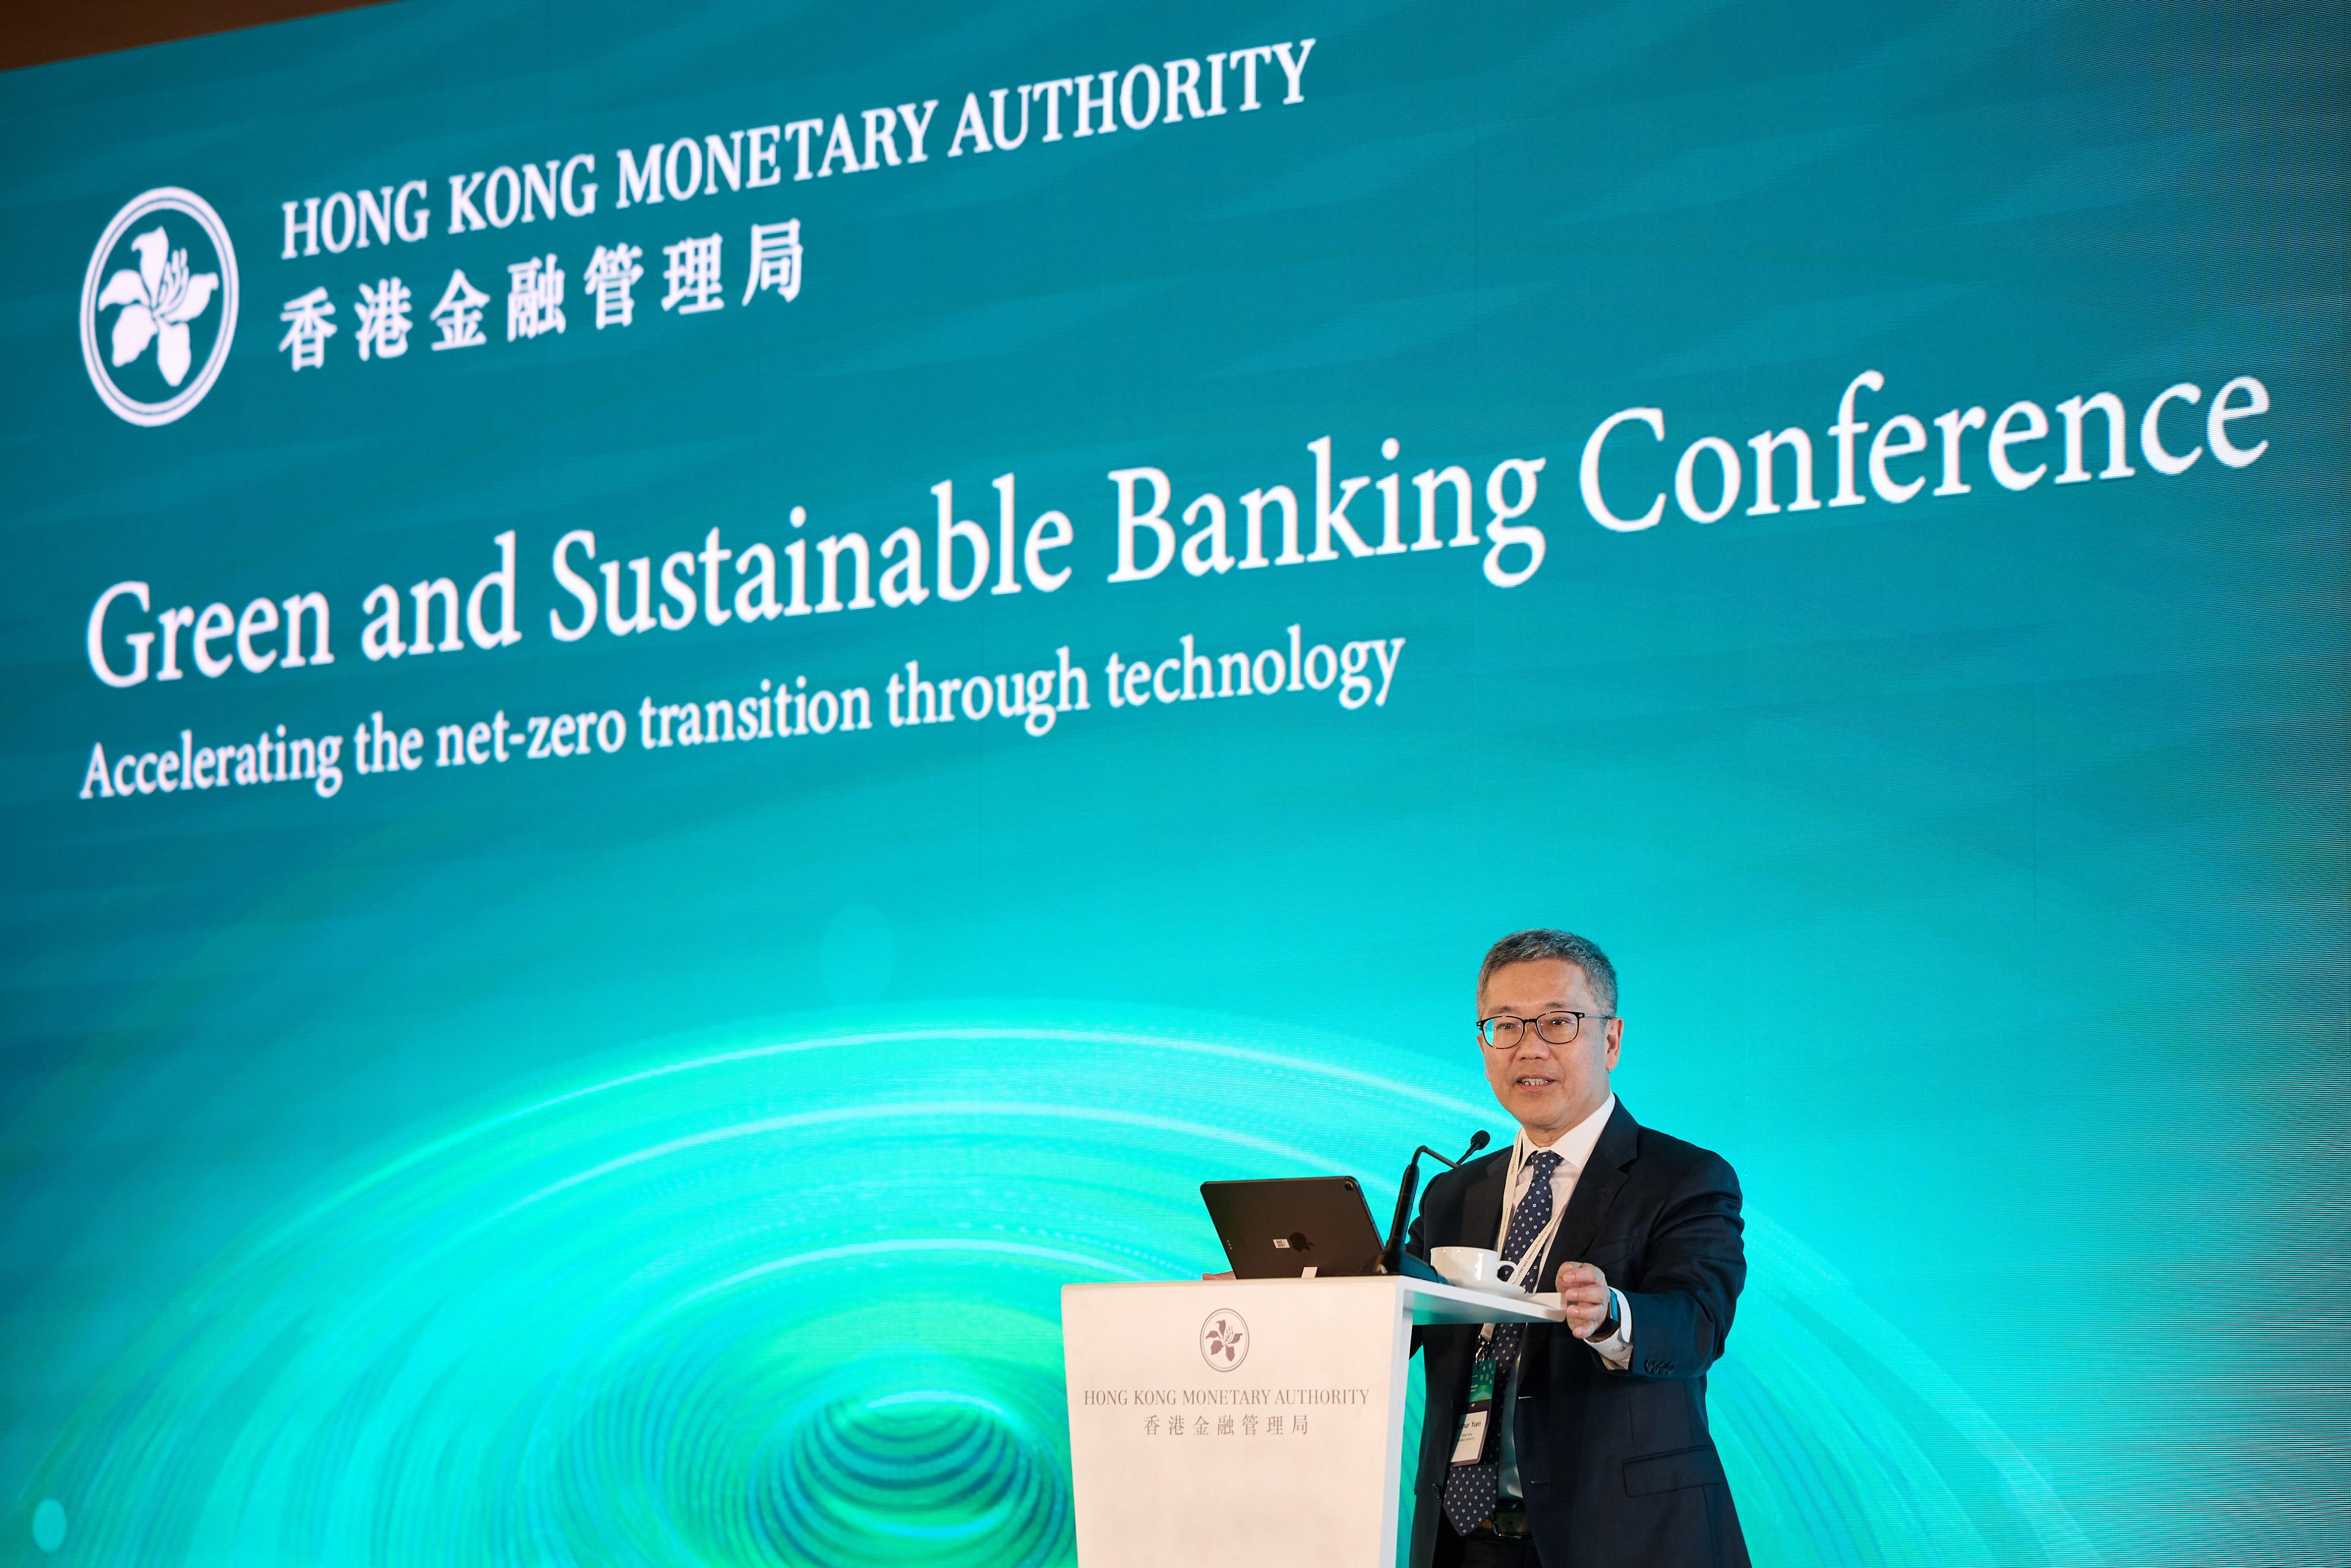 香港金融管理局（金管局）今日（十二月十一日）舉辦「綠色及可持續銀行研討會」。金管局副總裁阮國恒於「綠色及可持續銀行研討會」致開幕辭。